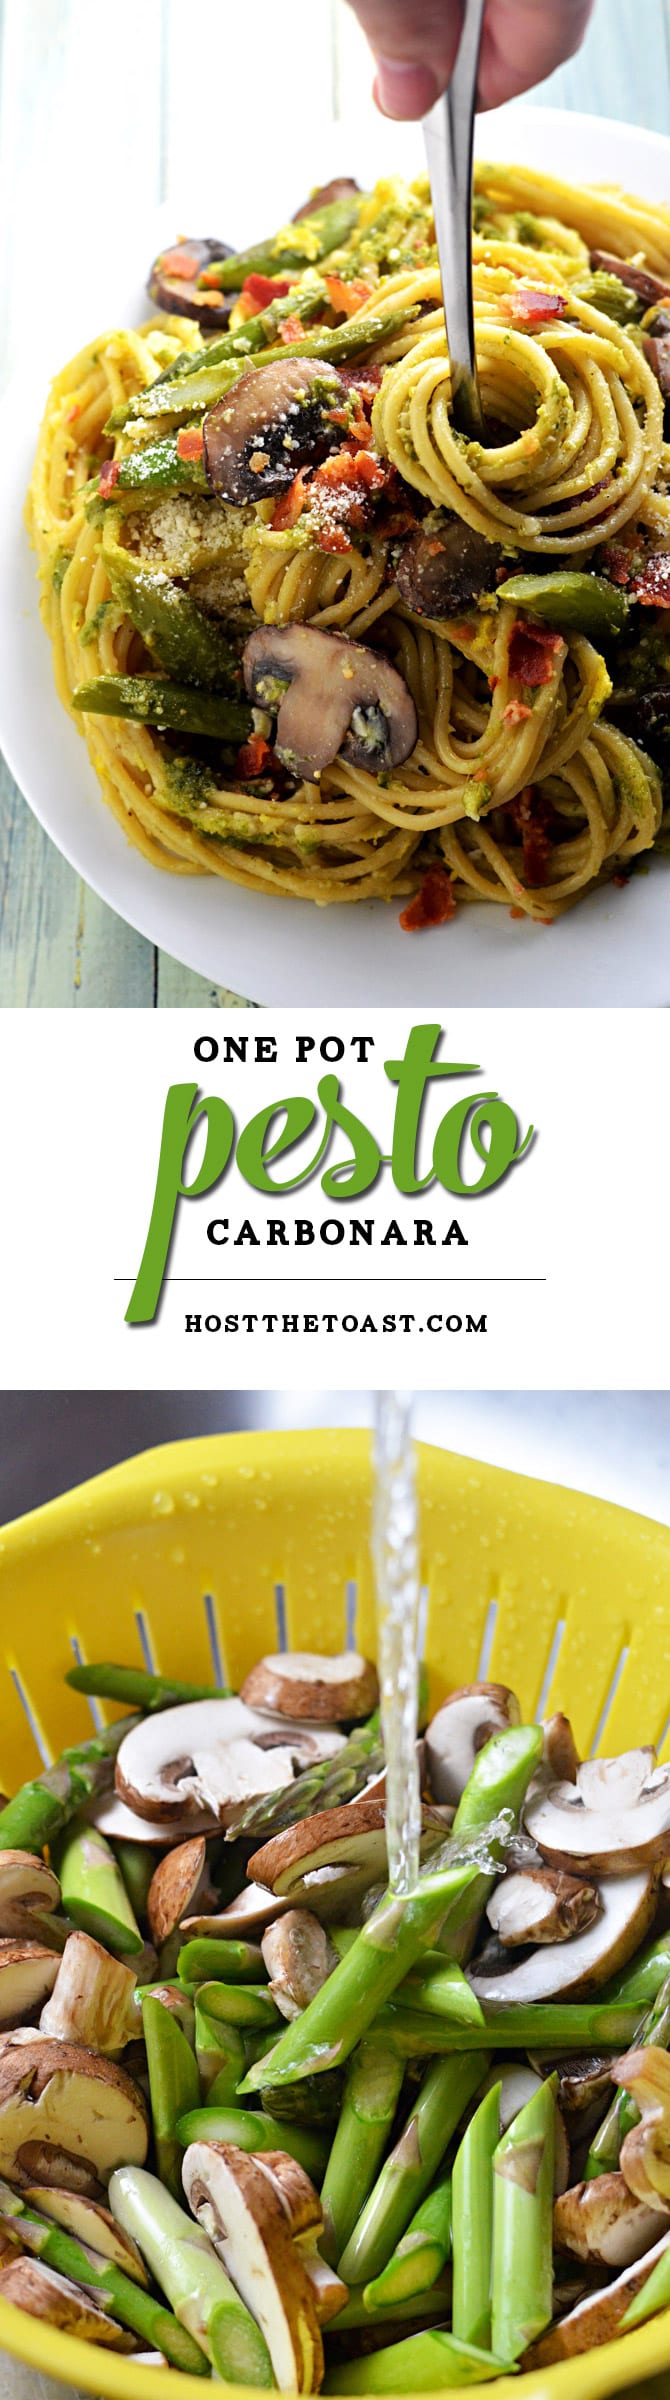 One Pot Pesto Carbonara. This one pot pasta recipe incorporates asparagus, mushrooms, eggs, bacon, and pesto! Perfect for spring! | hostthetoast.com